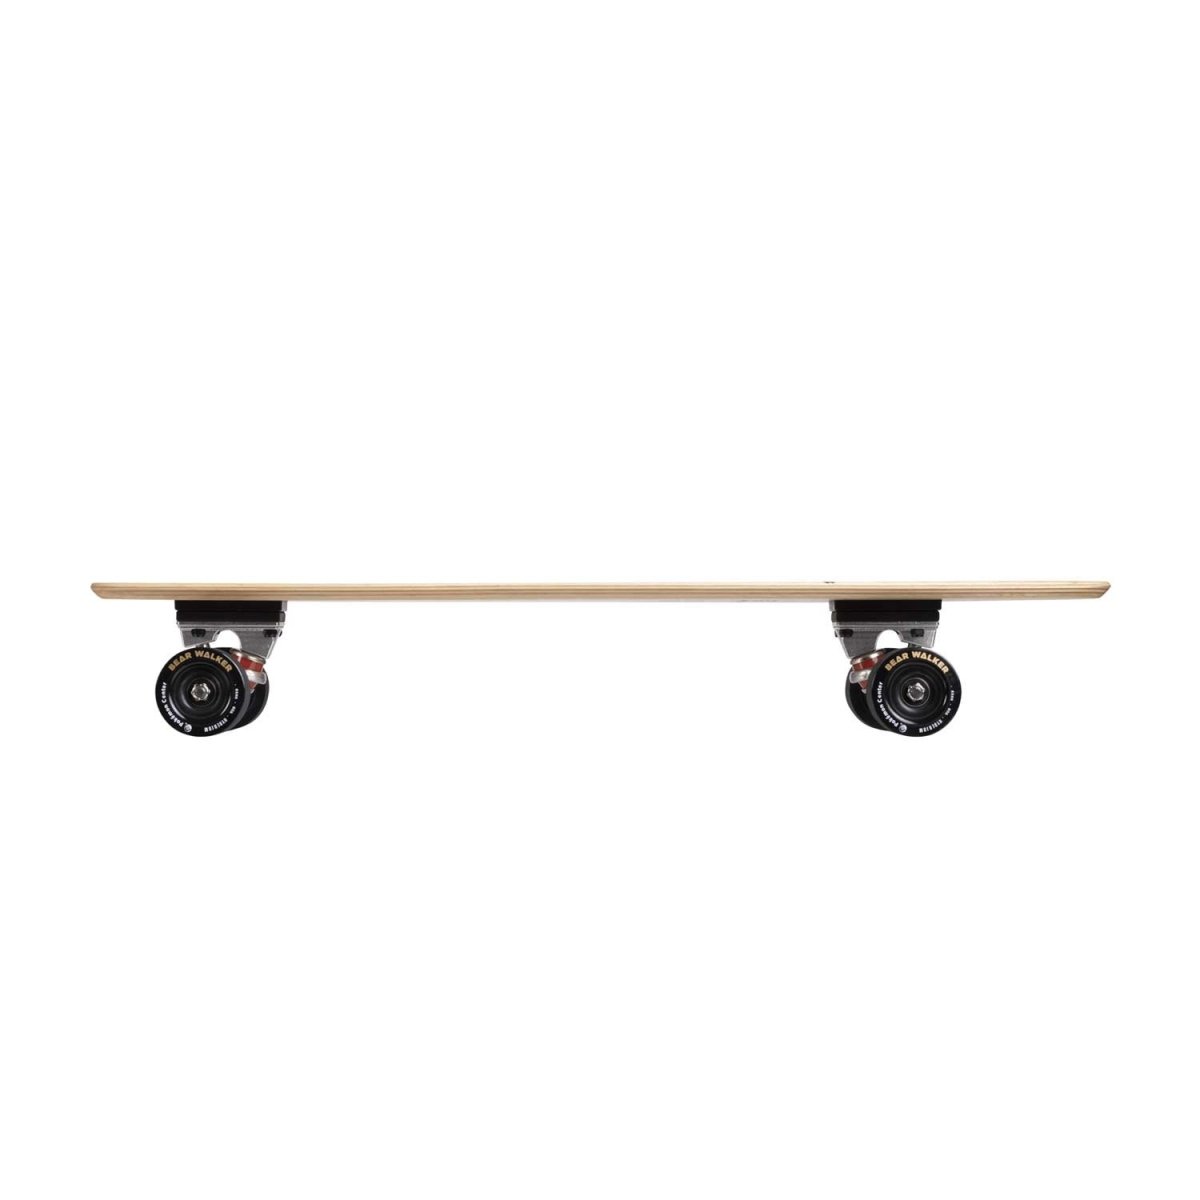 Black Skateboard / Longboard Grip Tape - 10x42 — MBoards